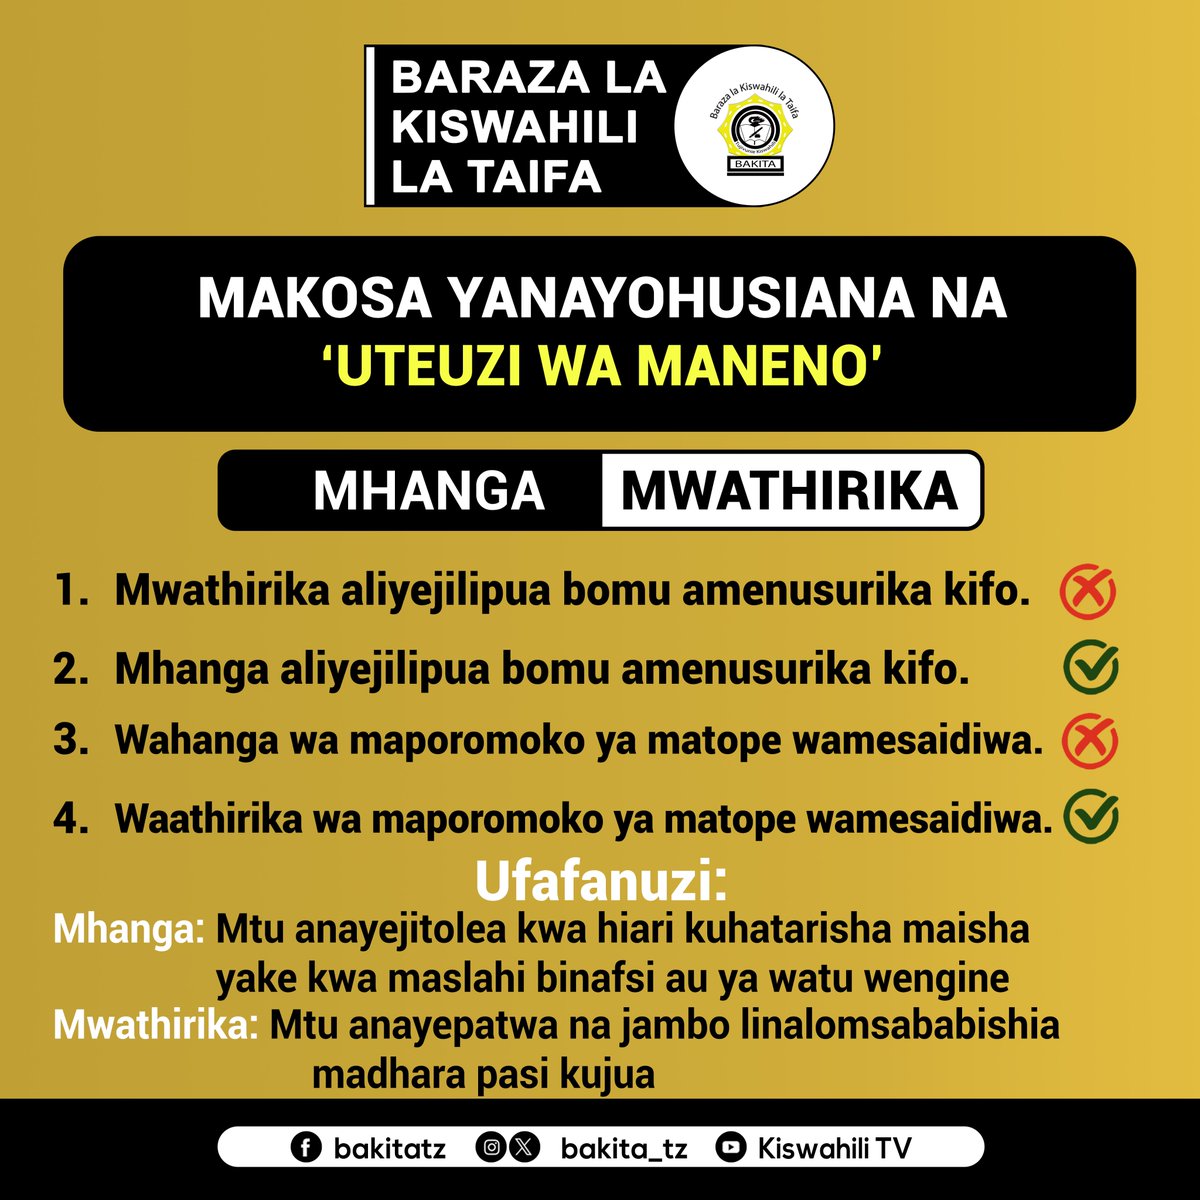 Baraza la Kiswahili la Taifa - BAKITA (@bakita_tz) on Twitter photo 2023-12-07 09:40:02